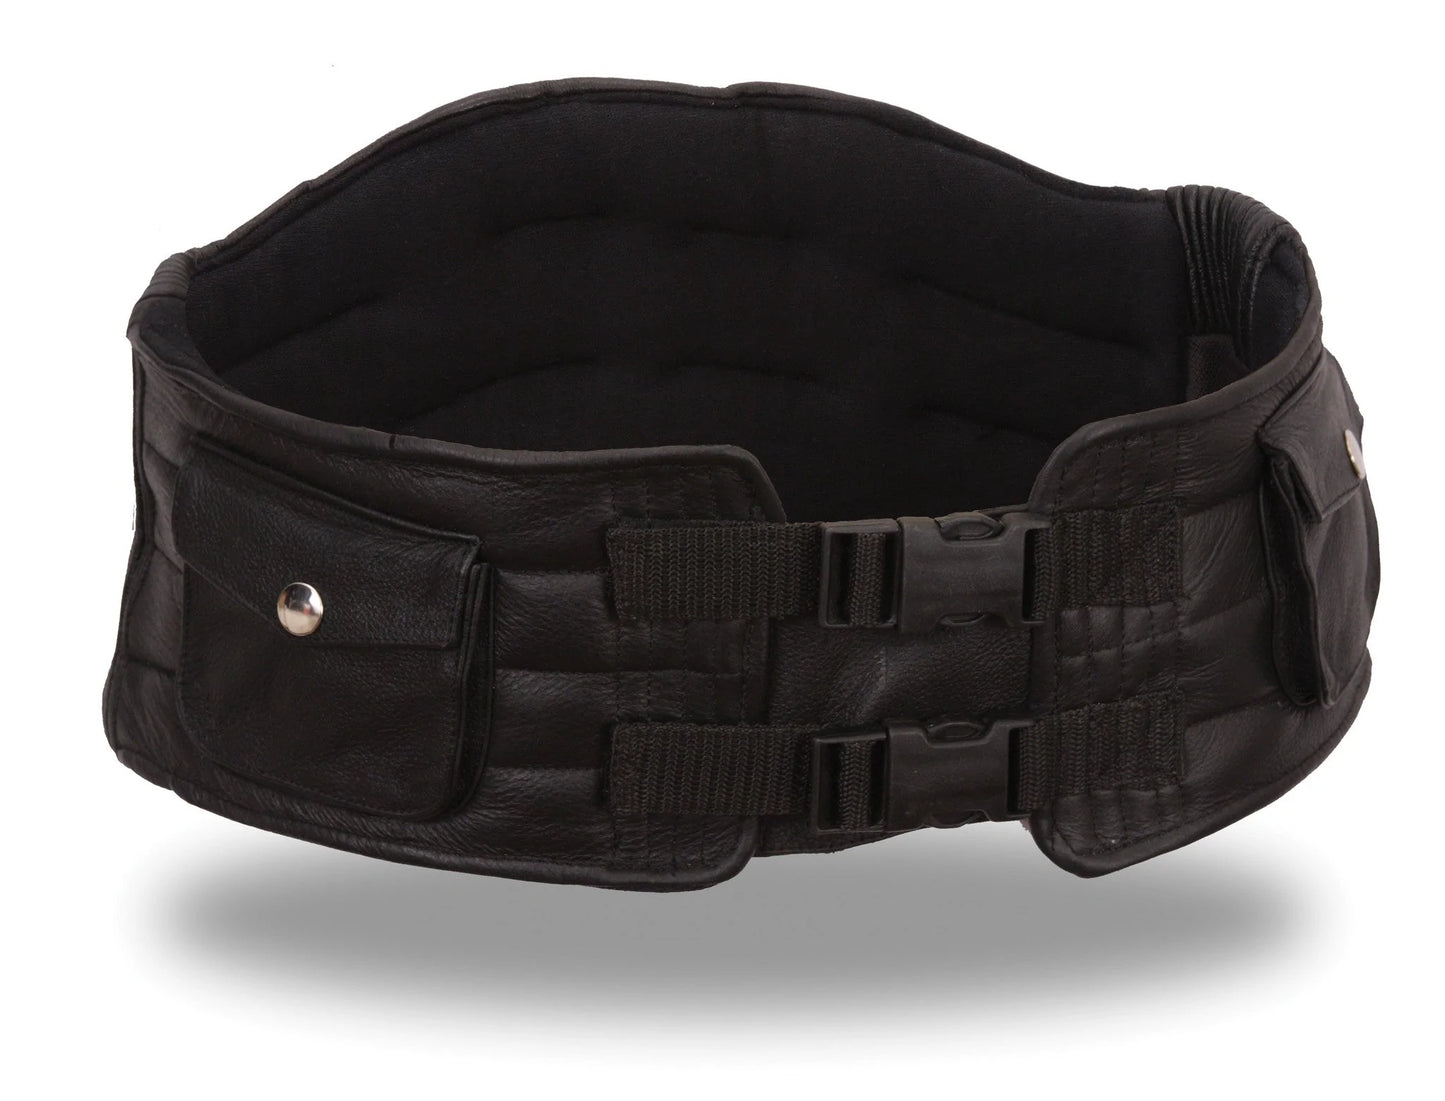 Kidney Belt black back support belt with pockets and straps